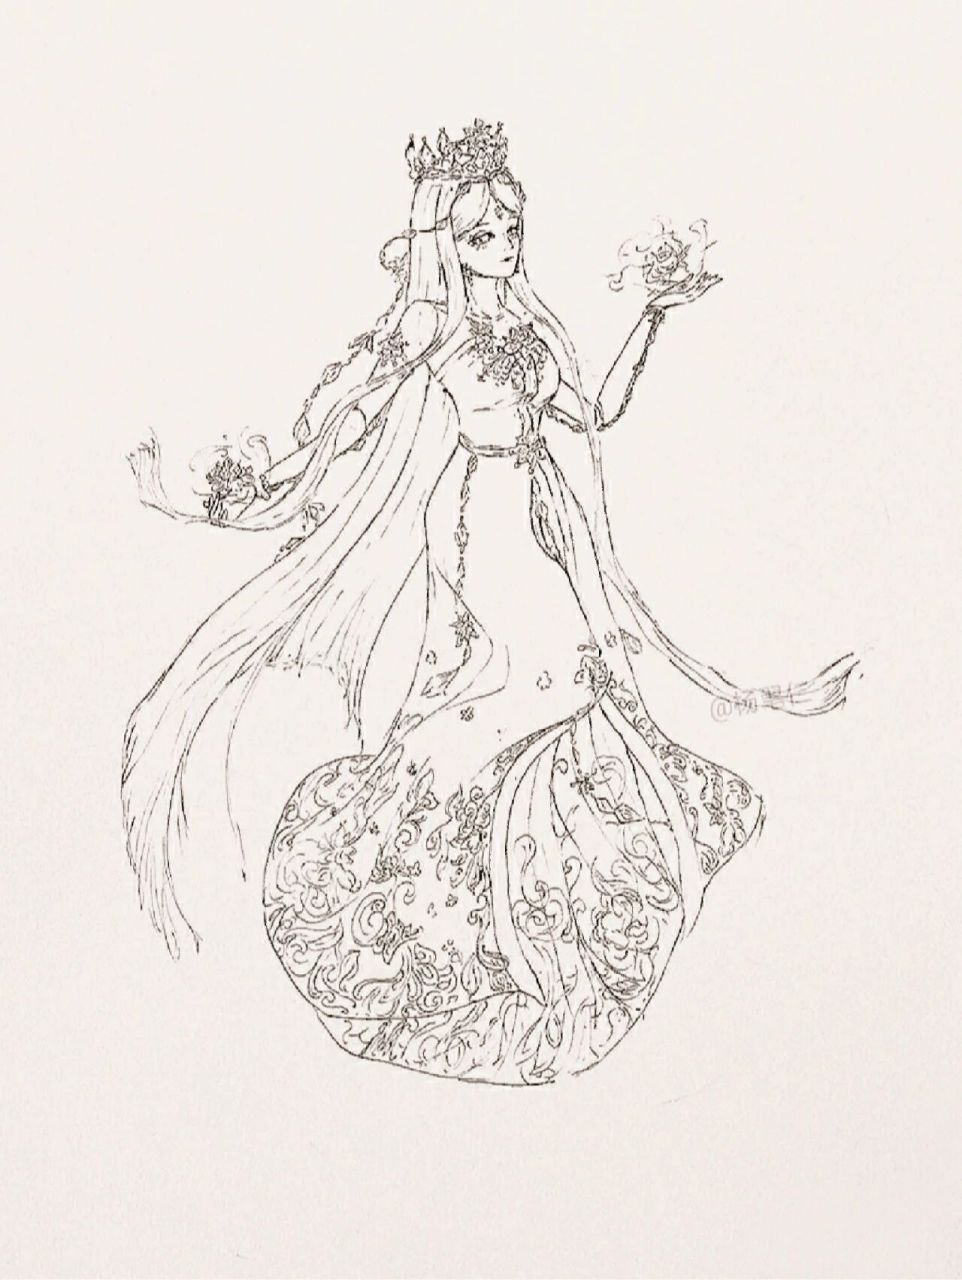 叶罗丽精灵梦篇 手绘绘画叶罗丽精灵梦篇:情公主,冰公主,梦公主